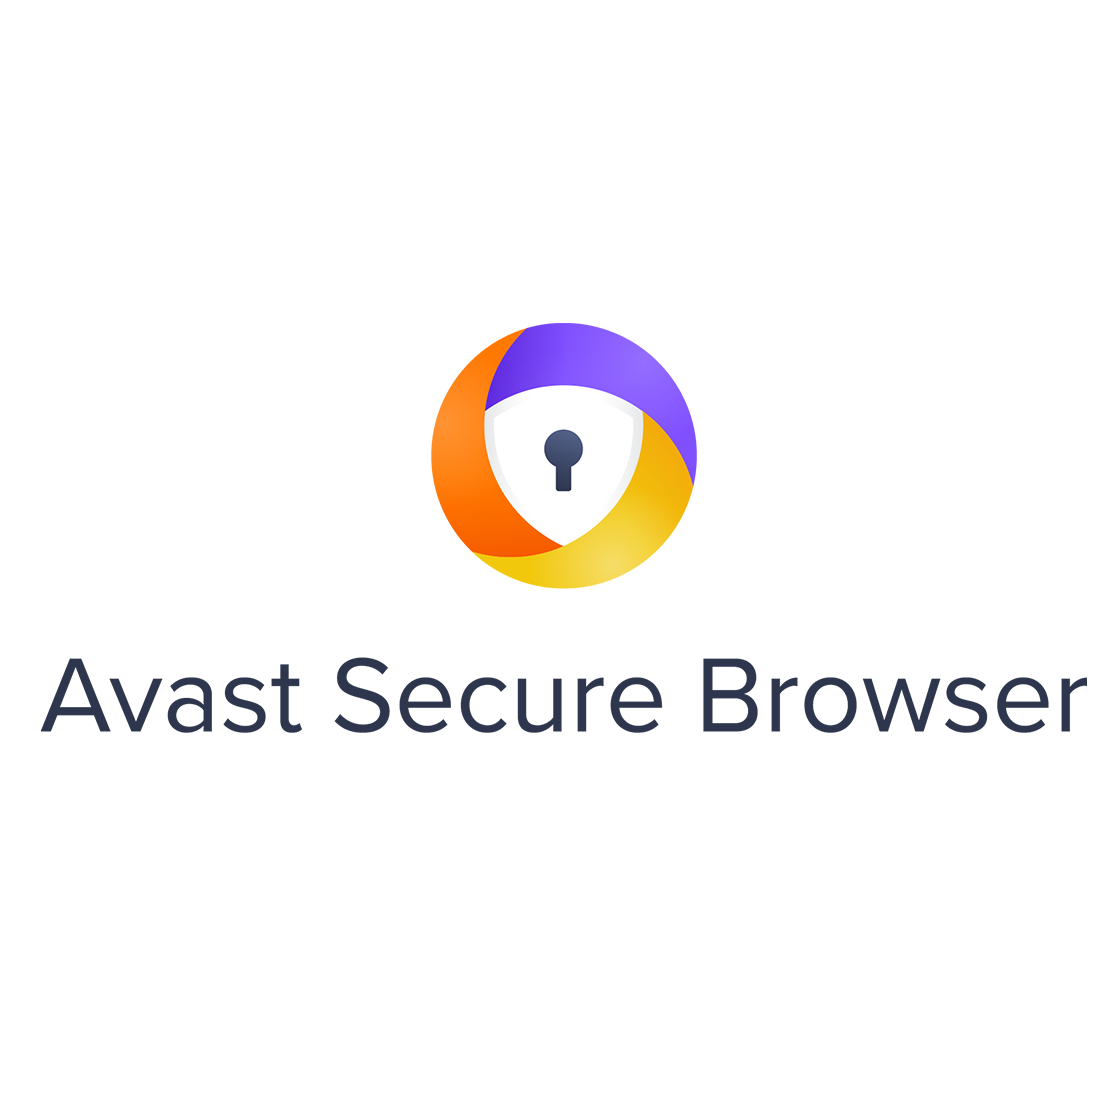 Logotipo do navegador seguro Avast